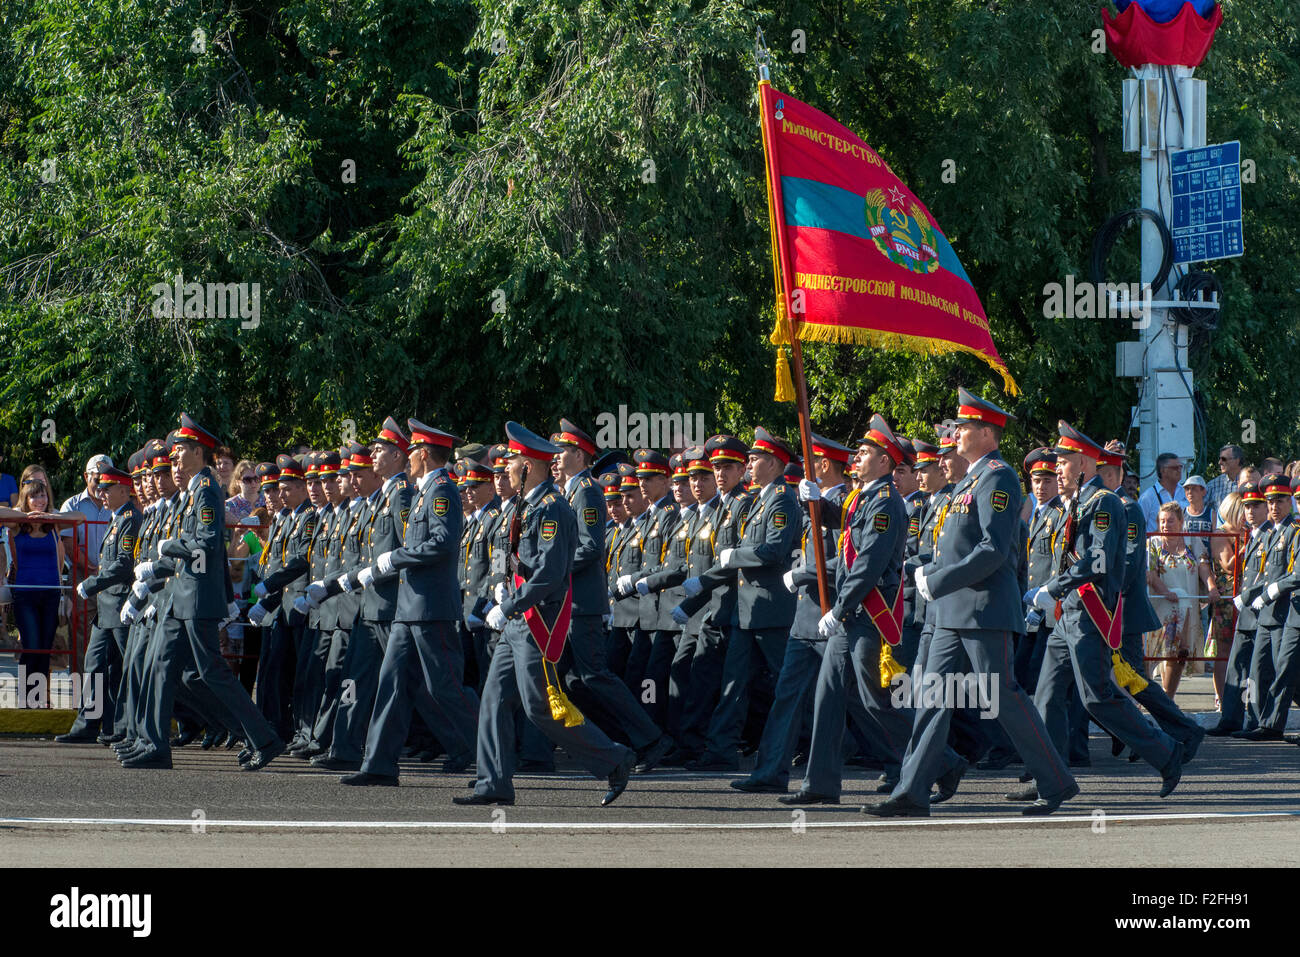 Soldati in passerella - XXV anniversario della Pridnestrovian Repubblica Moldava PMR, Transnistria URSS sovietica Moldavia Foto Stock